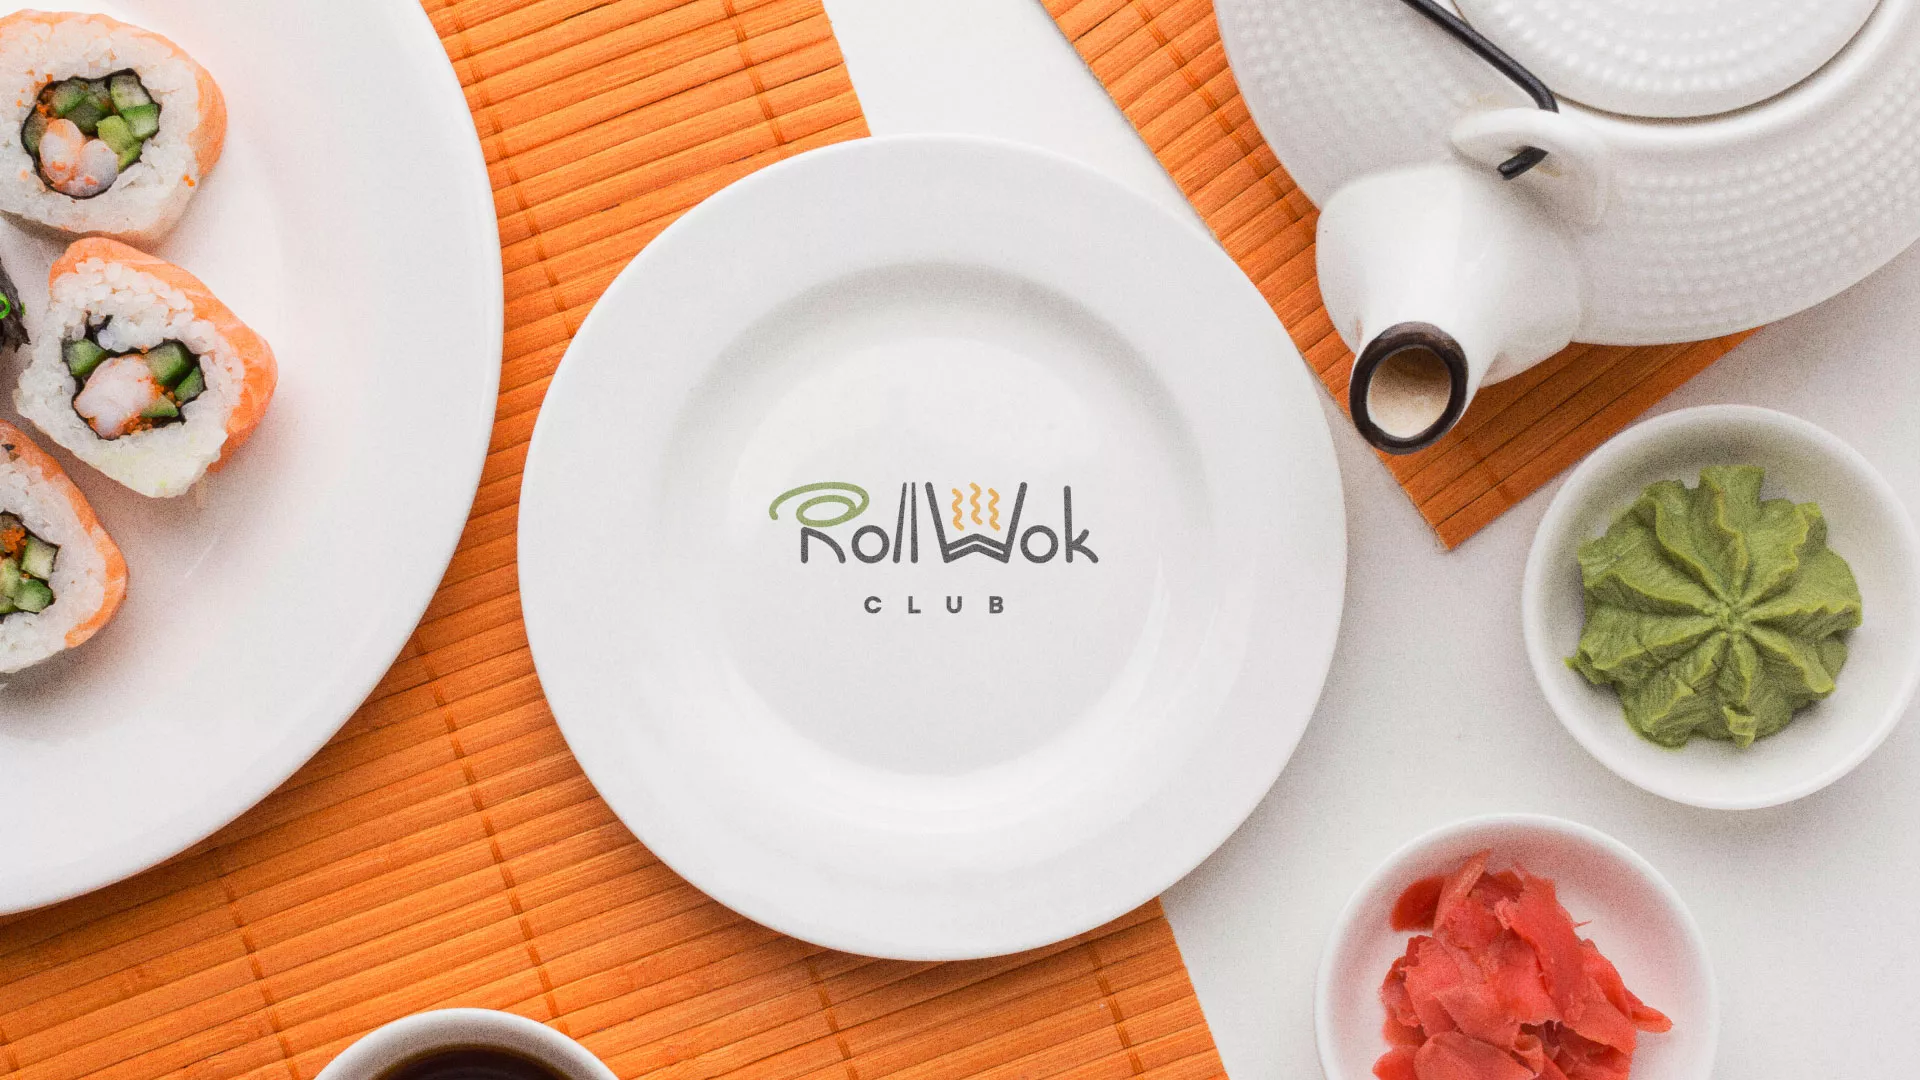 Разработка логотипа и фирменного стиля суши-бара «Roll Wok Club» в Никольском